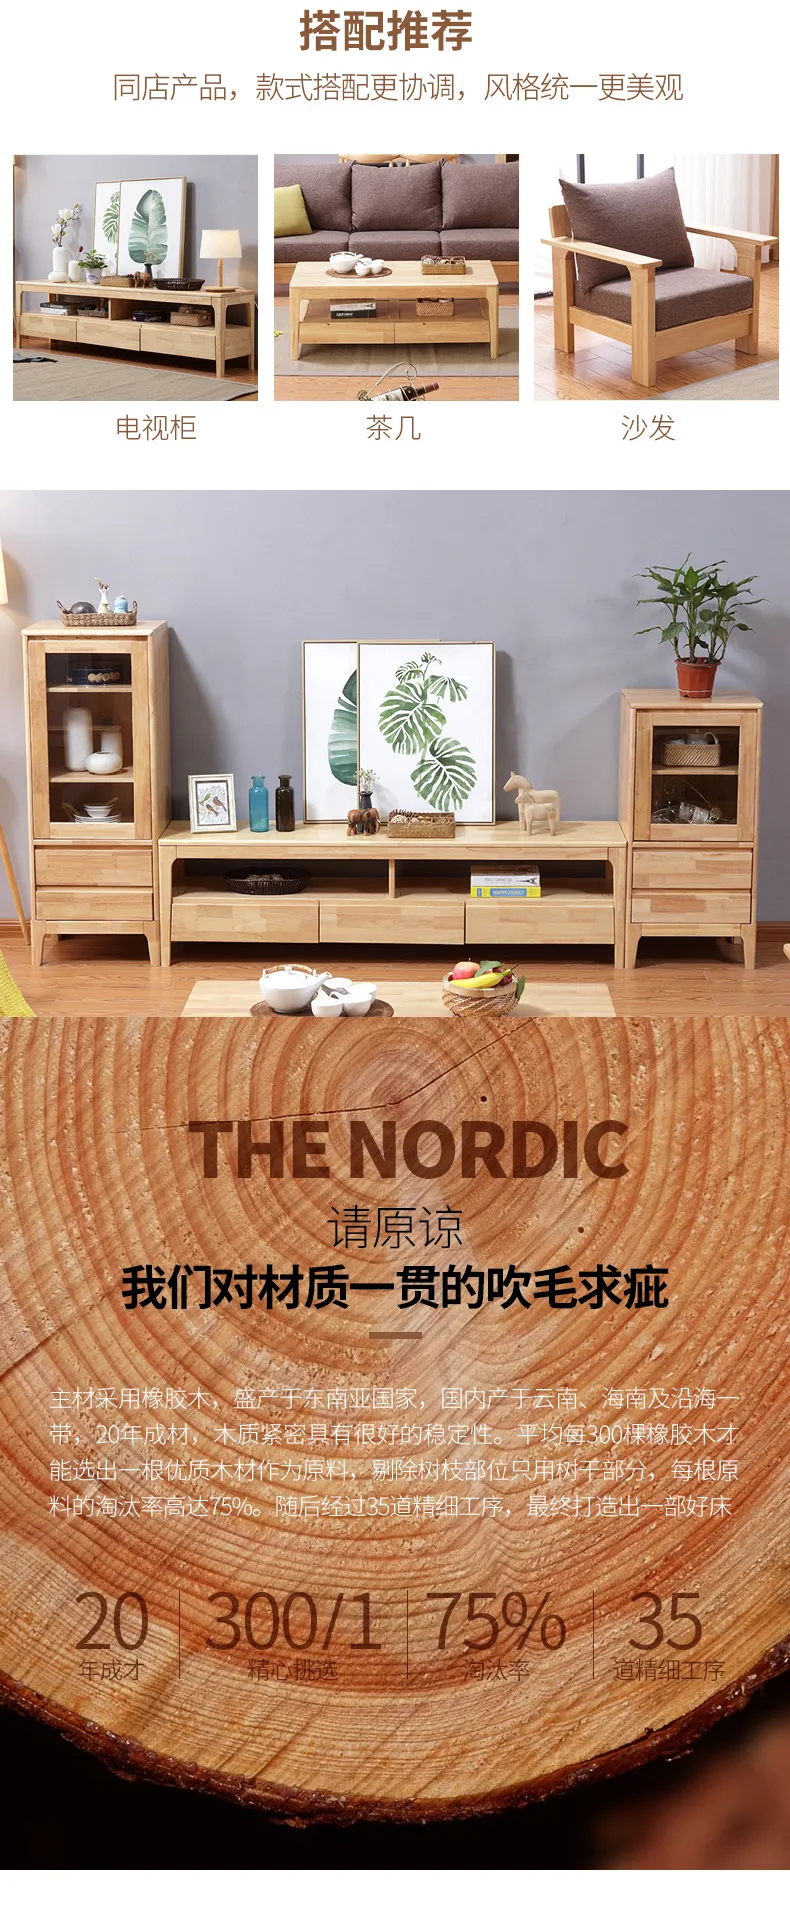 华松居 北欧日式全实木电视柜茶几组合客厅家具 TB-26#-L(图3)